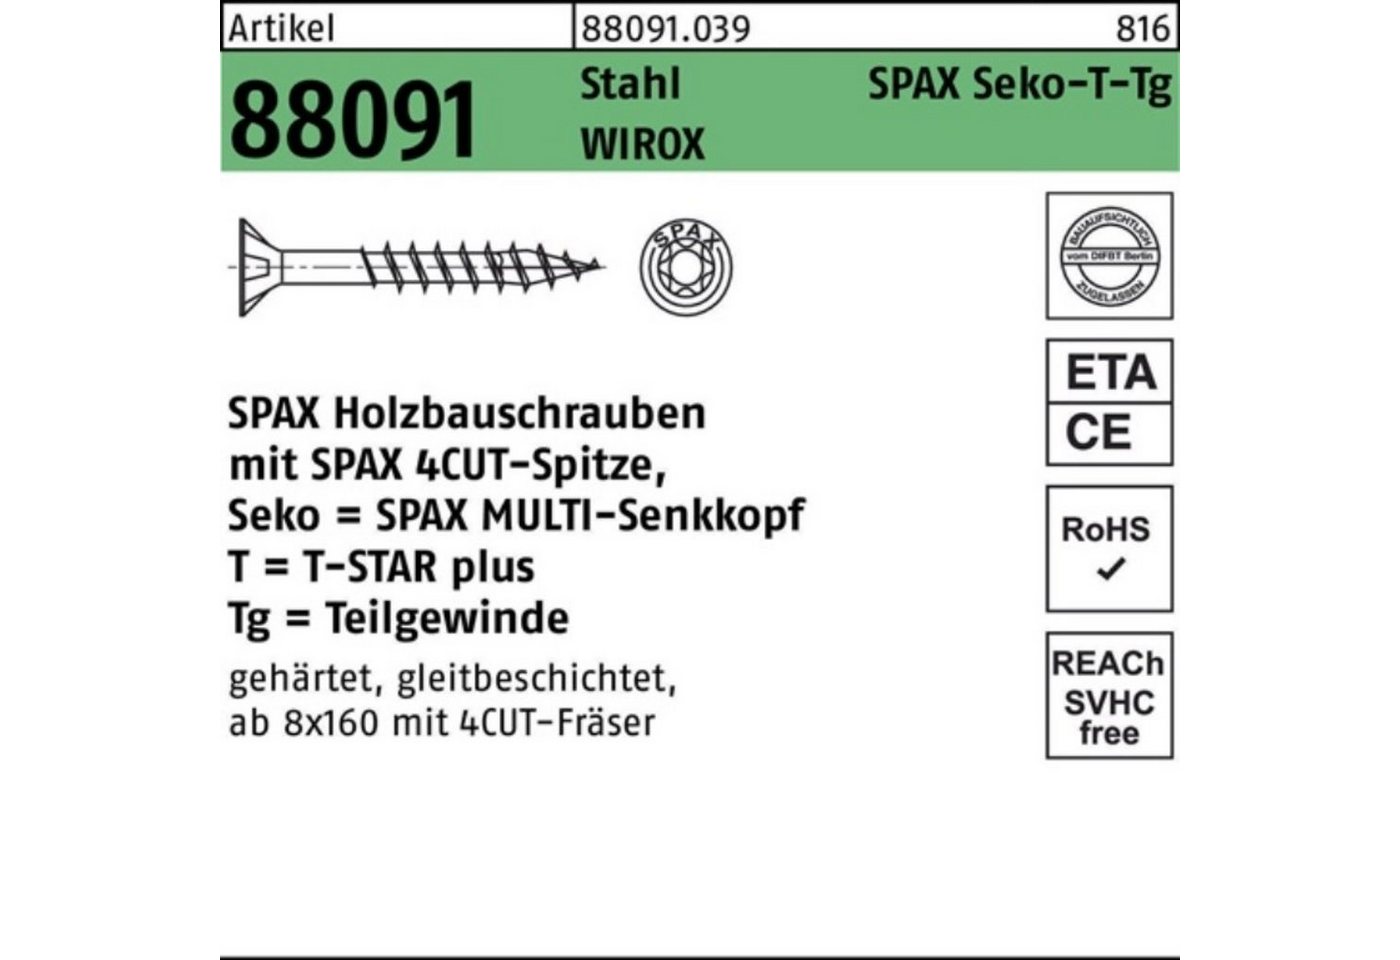 SPAX Schraube 100er Pack Schraube R 88091 SEKO/T-STAR TG 10x 280/80-T50 Stahl WIROX von SPAX